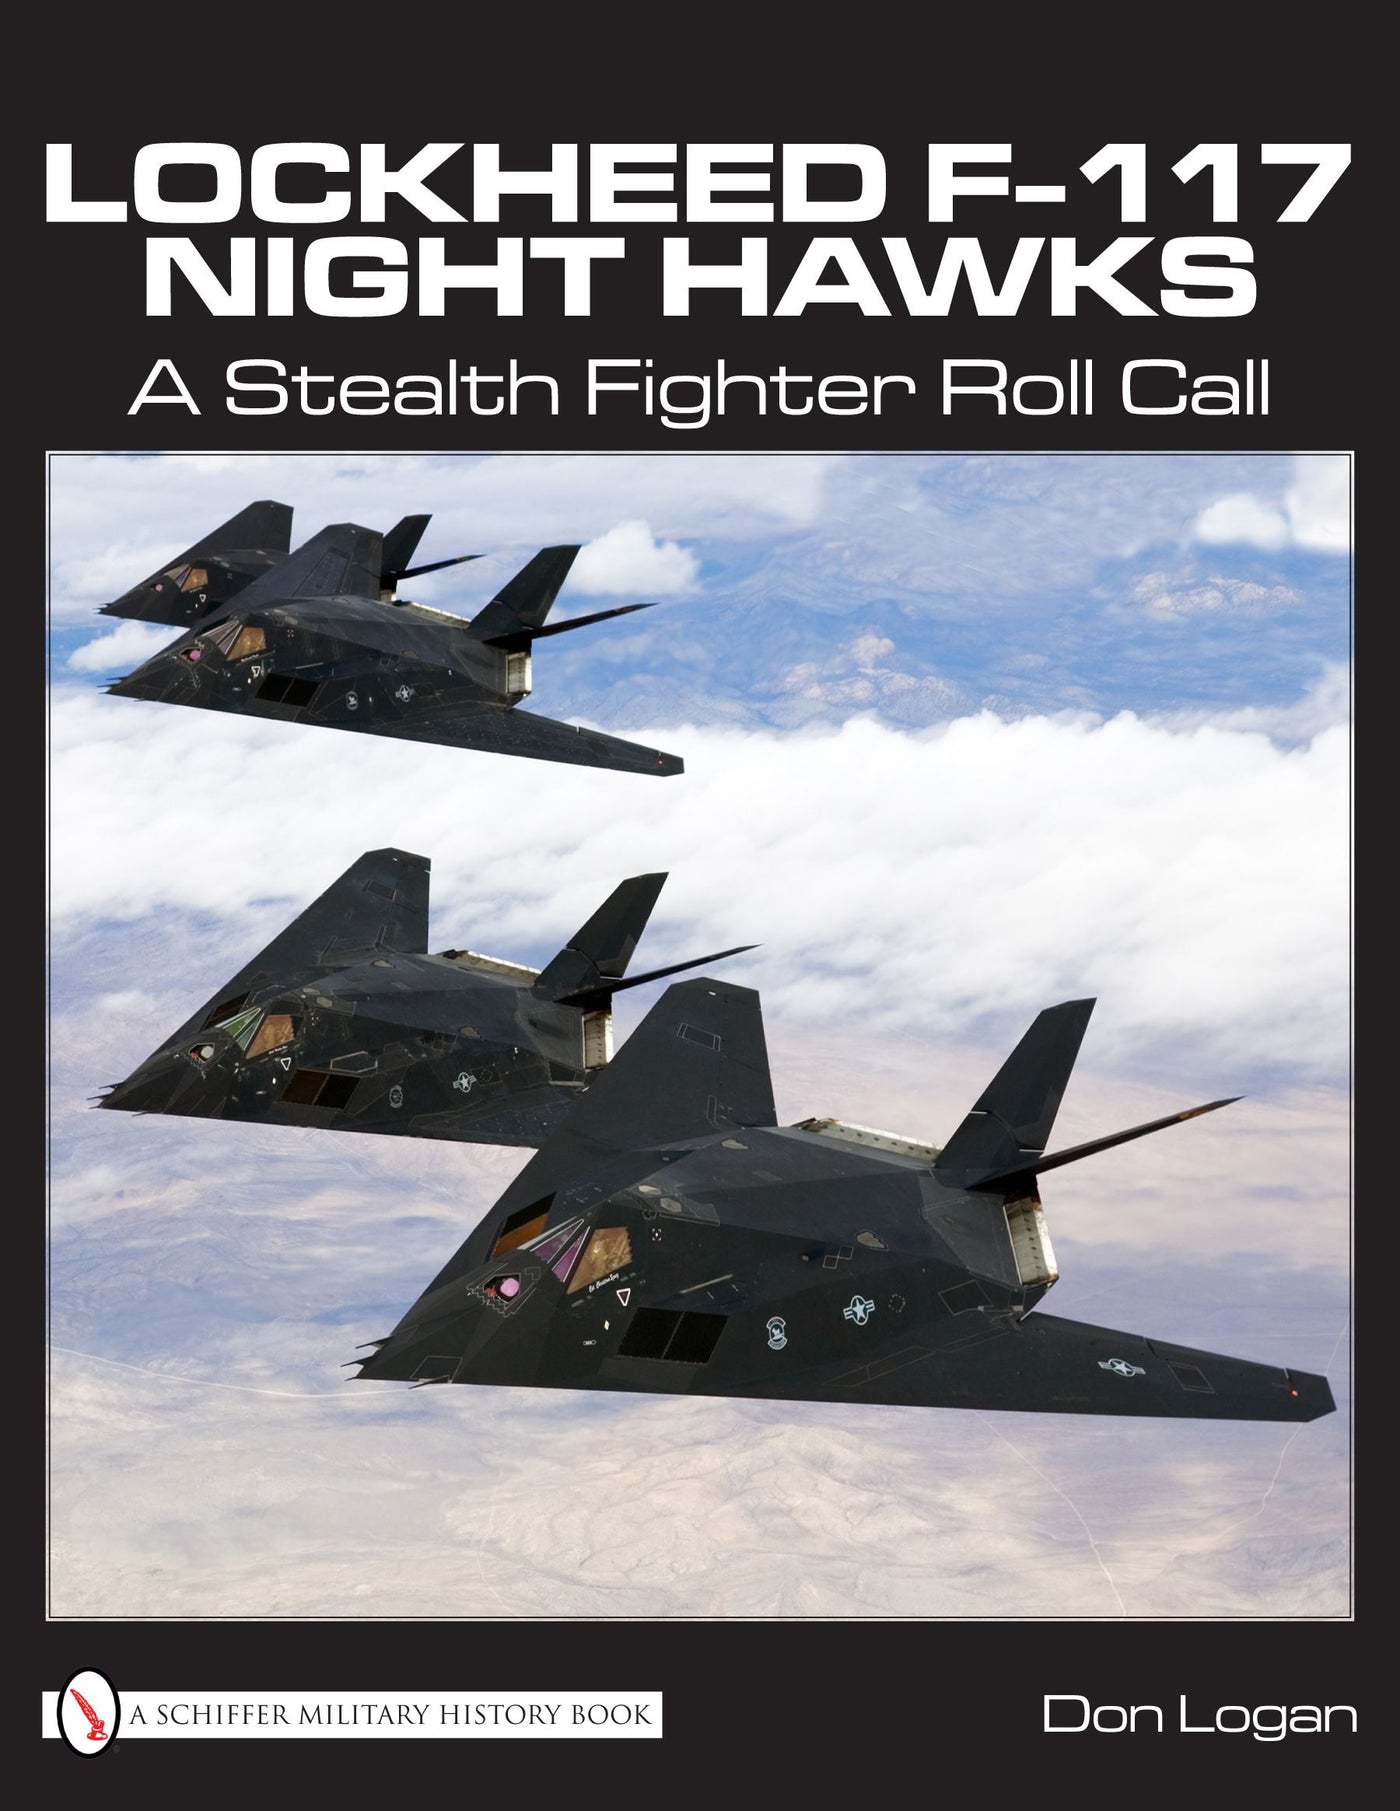 Lockheed F-117 Night Hawks